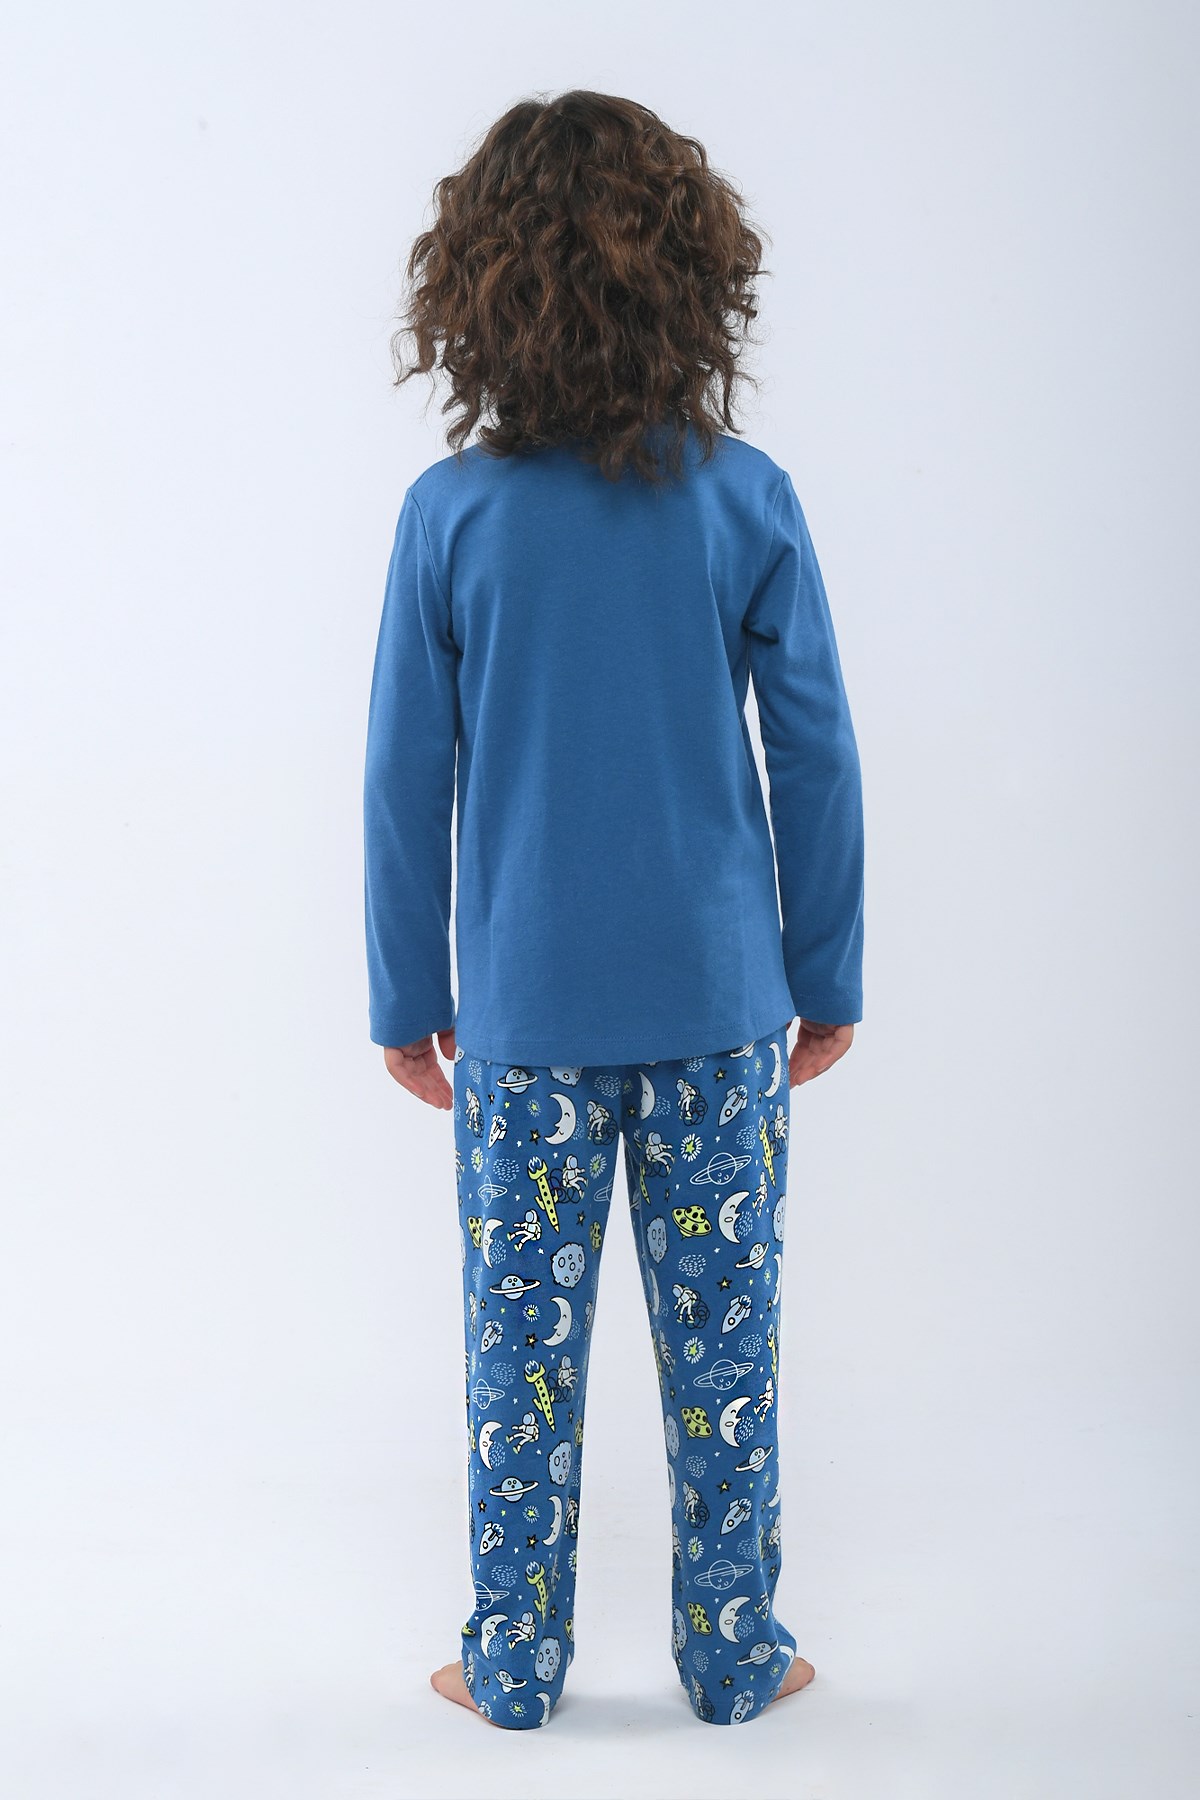 Blue Space Erkek Çocuk Pijama Takımı MAVİ